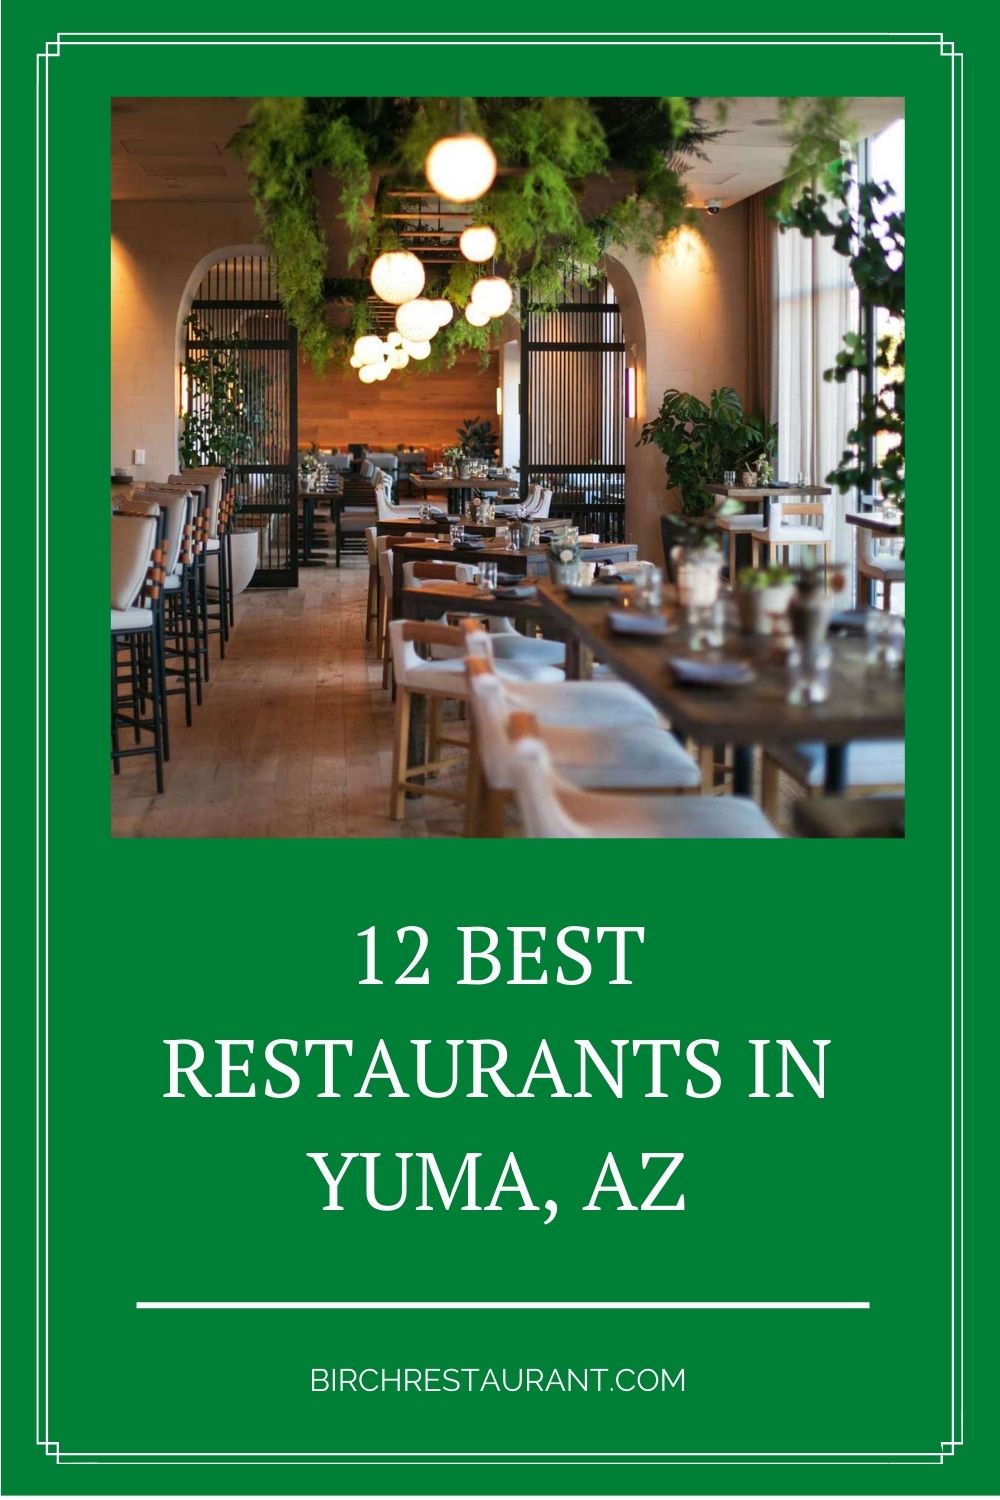 Best Restaurants in Yuma